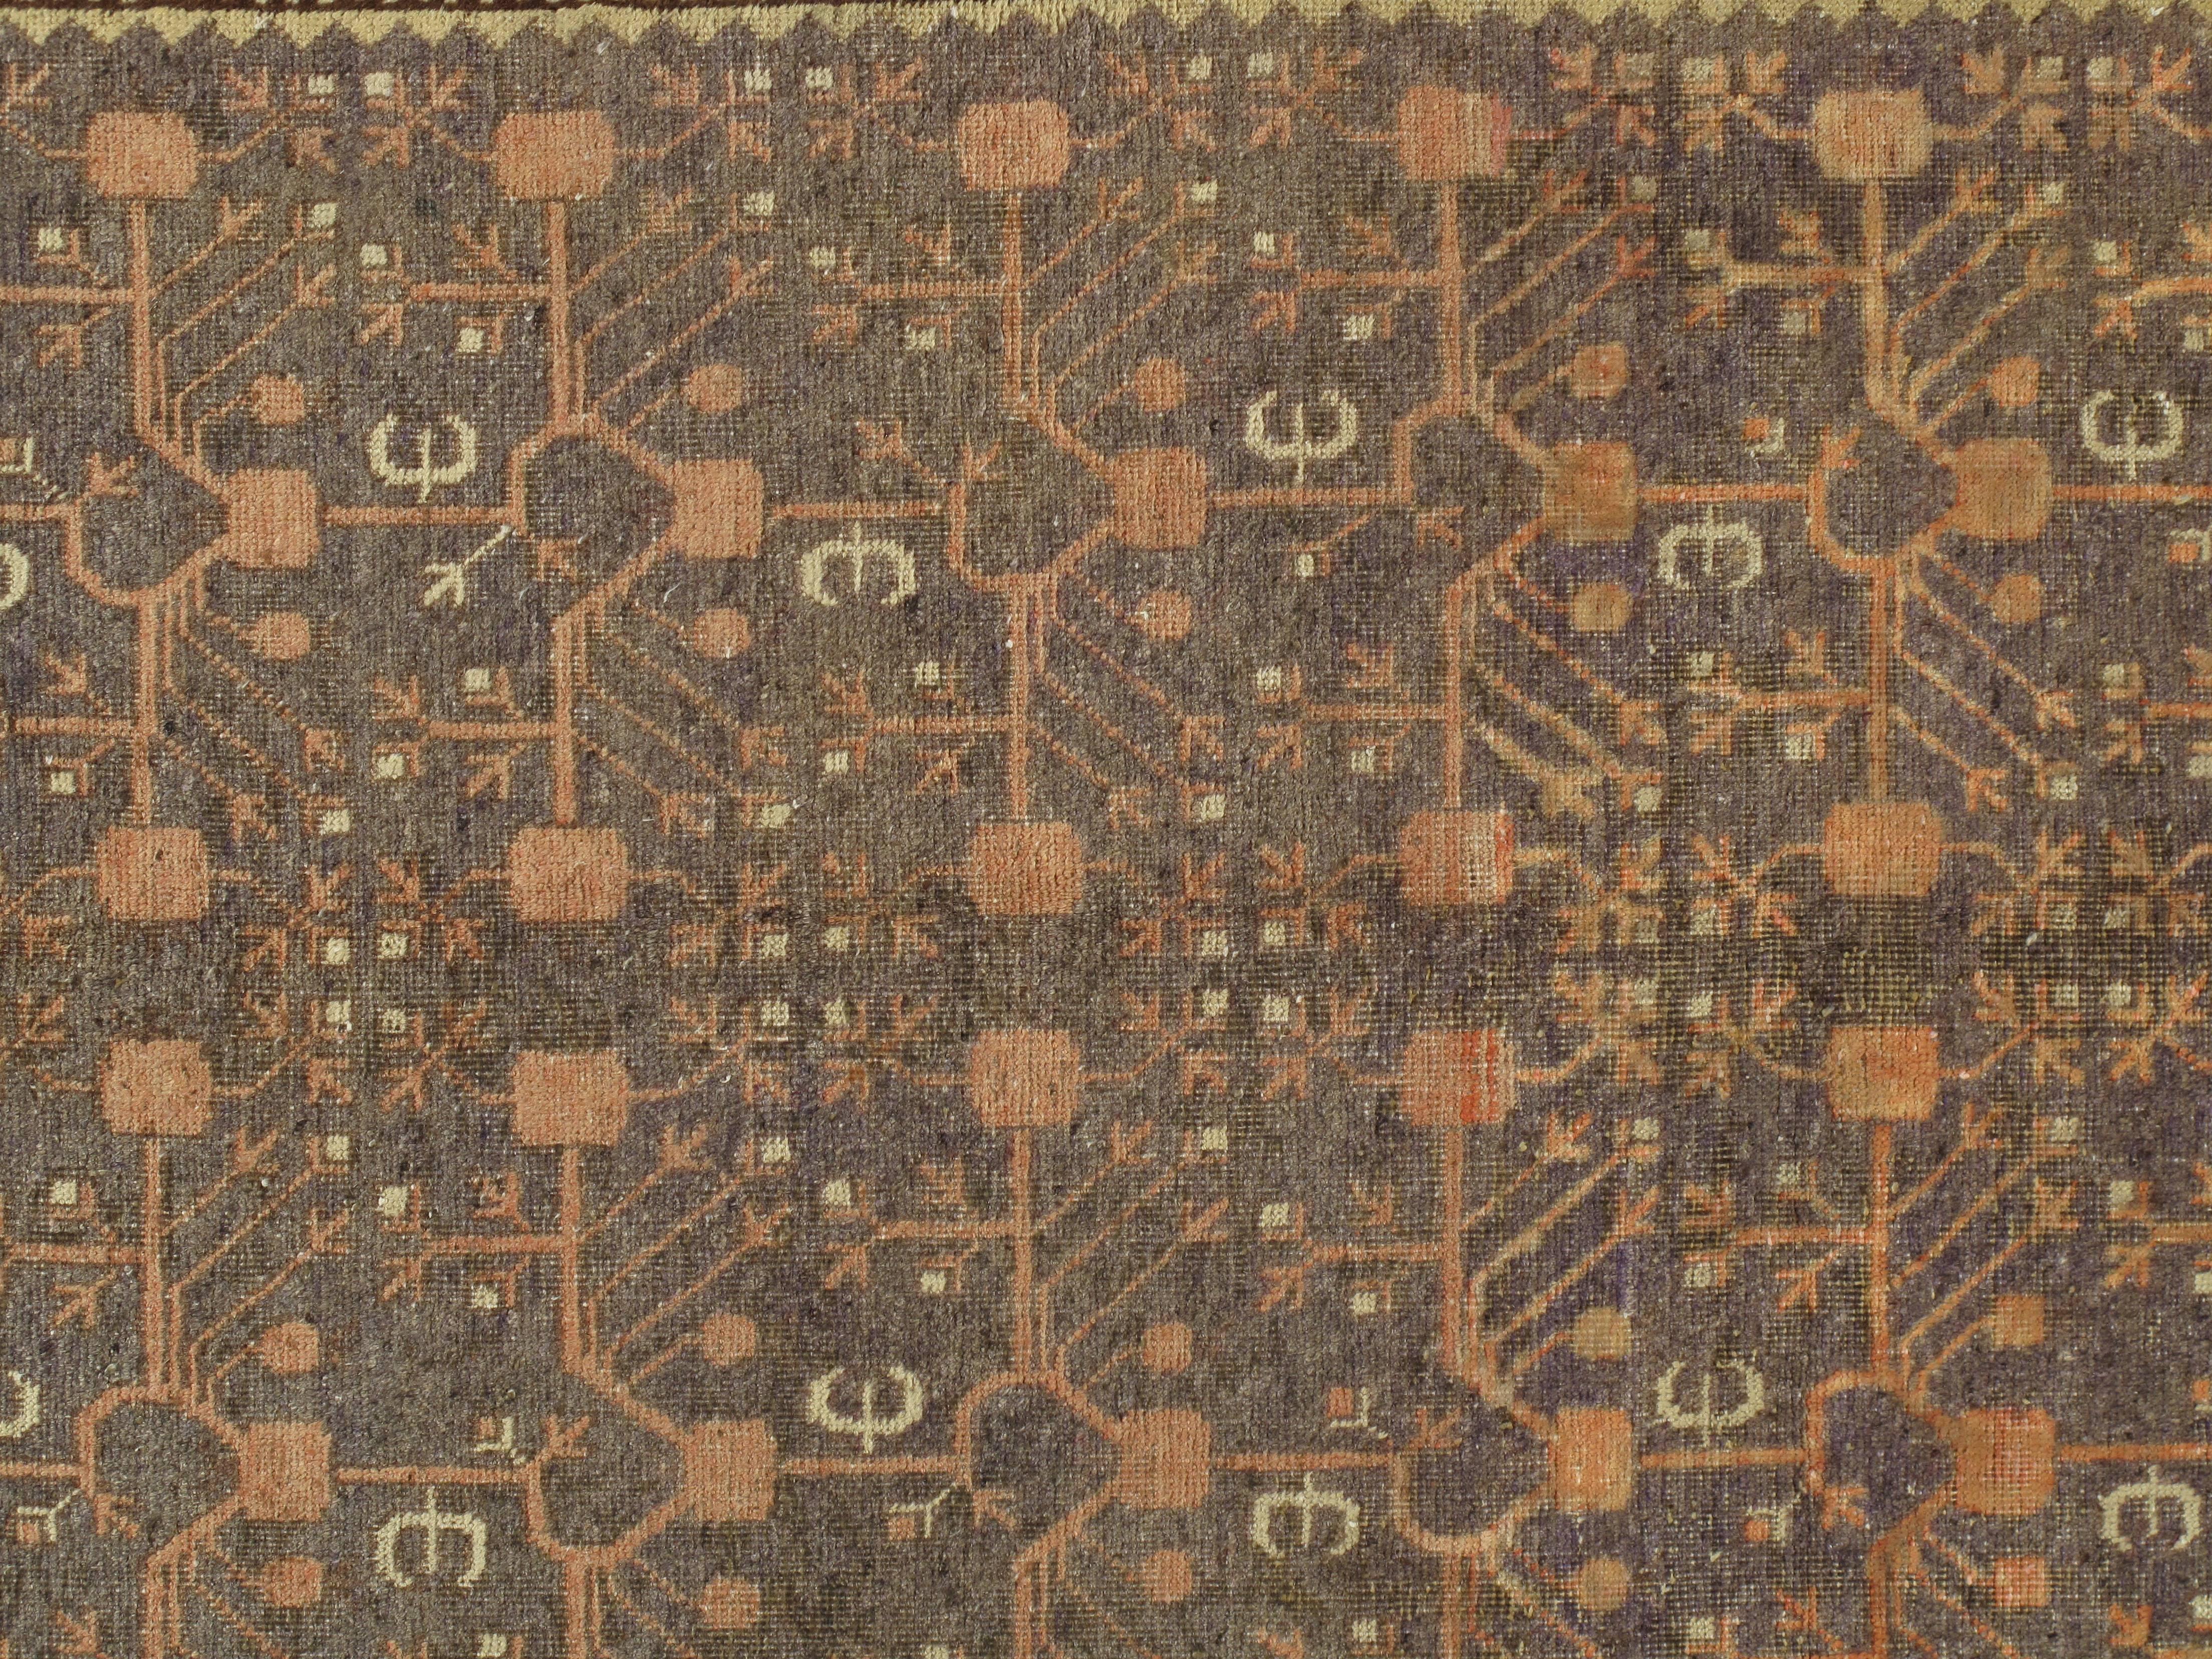 Antike Khotan-Teppiche wurden in kleinen Dörfern in Ostturkestan hergestellt, das heute Teil der Region Xinjiang im Westen Chinas ist. In diesem Gebiet werden seit dem 17. Jahrhundert immer wieder Teppiche hergestellt, wobei die Produktion im 18.